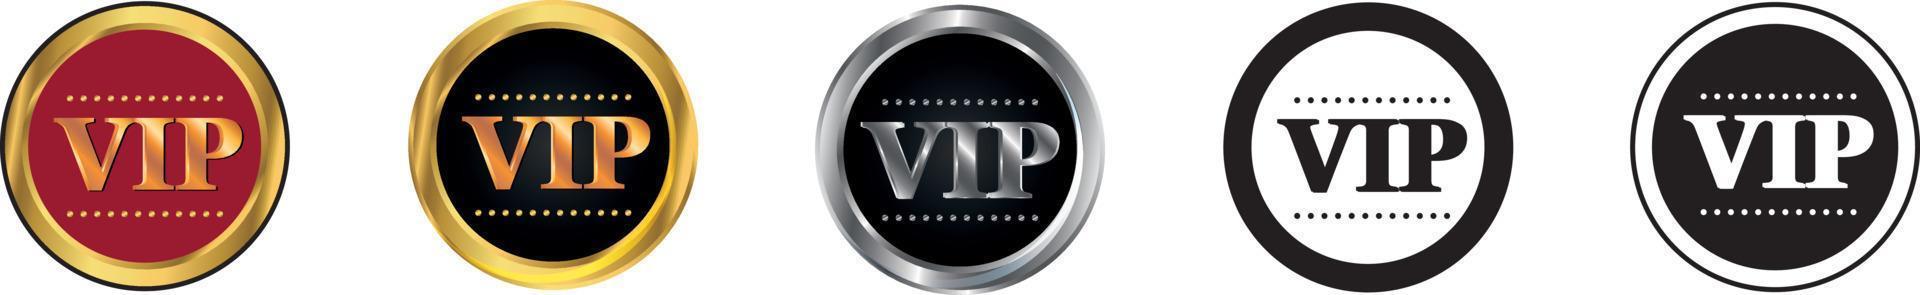 emblema redondo para membros do clube vip. vetor